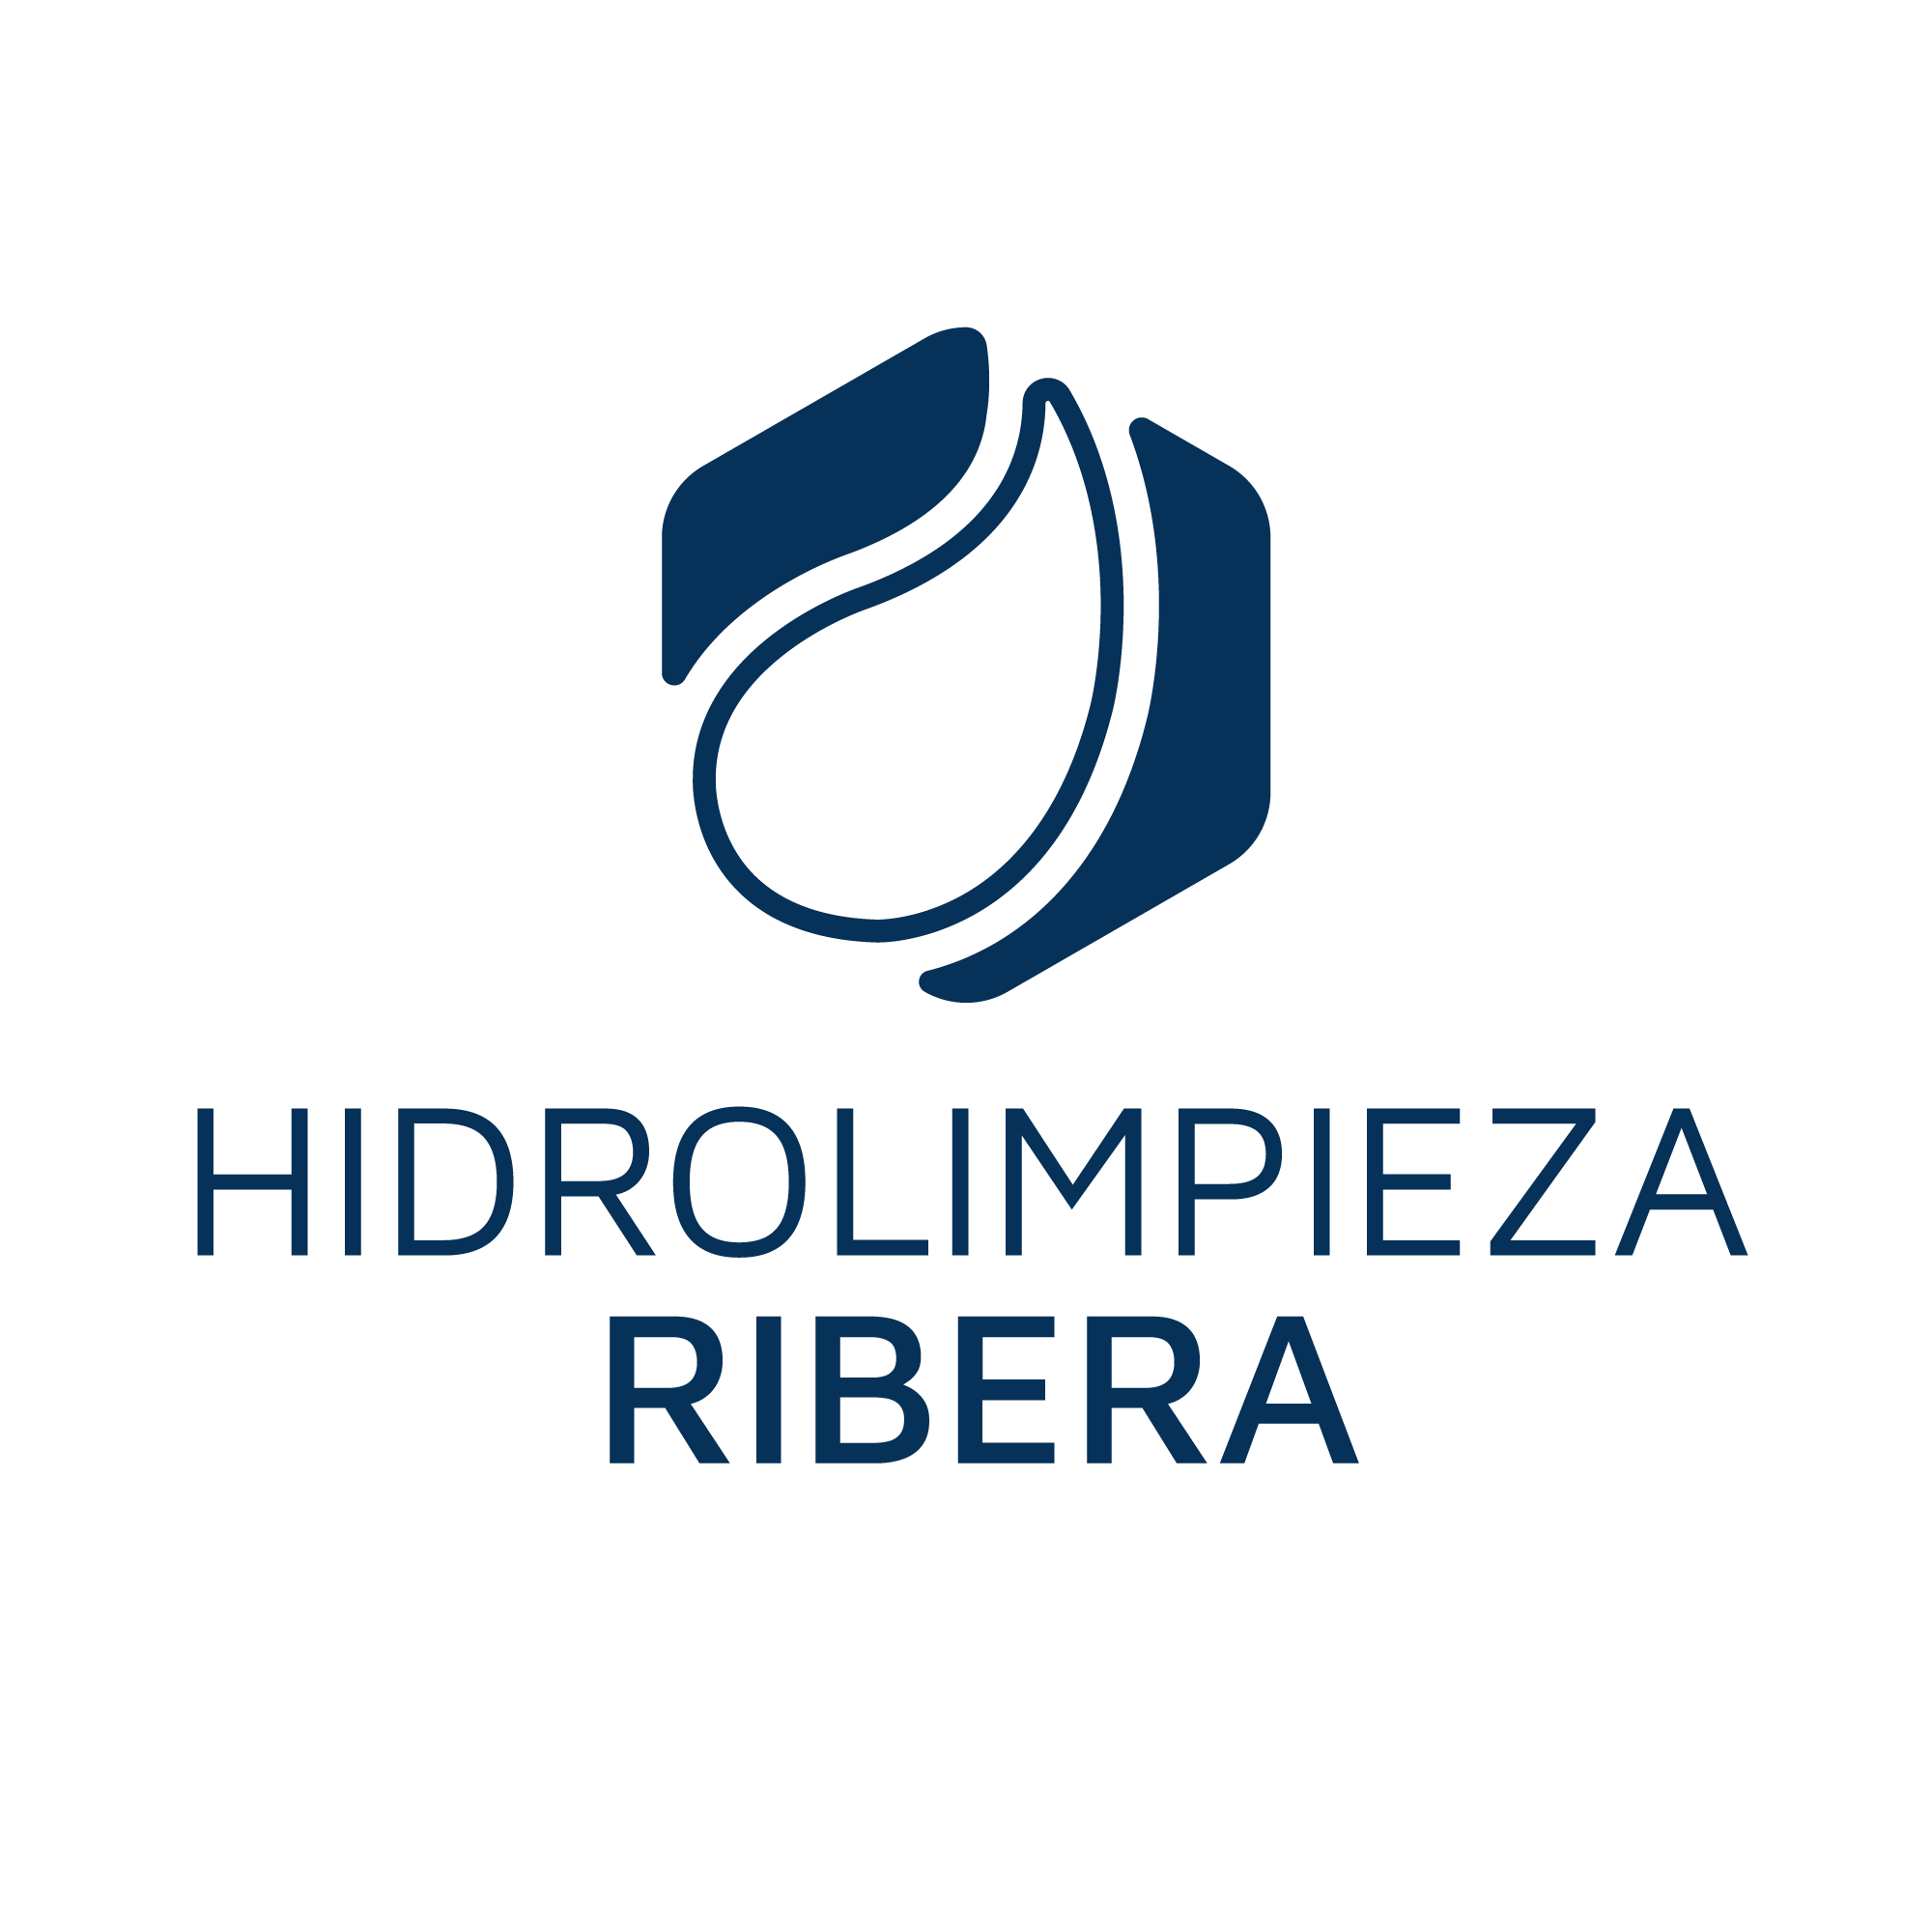 Hidrolimpieza Ribera